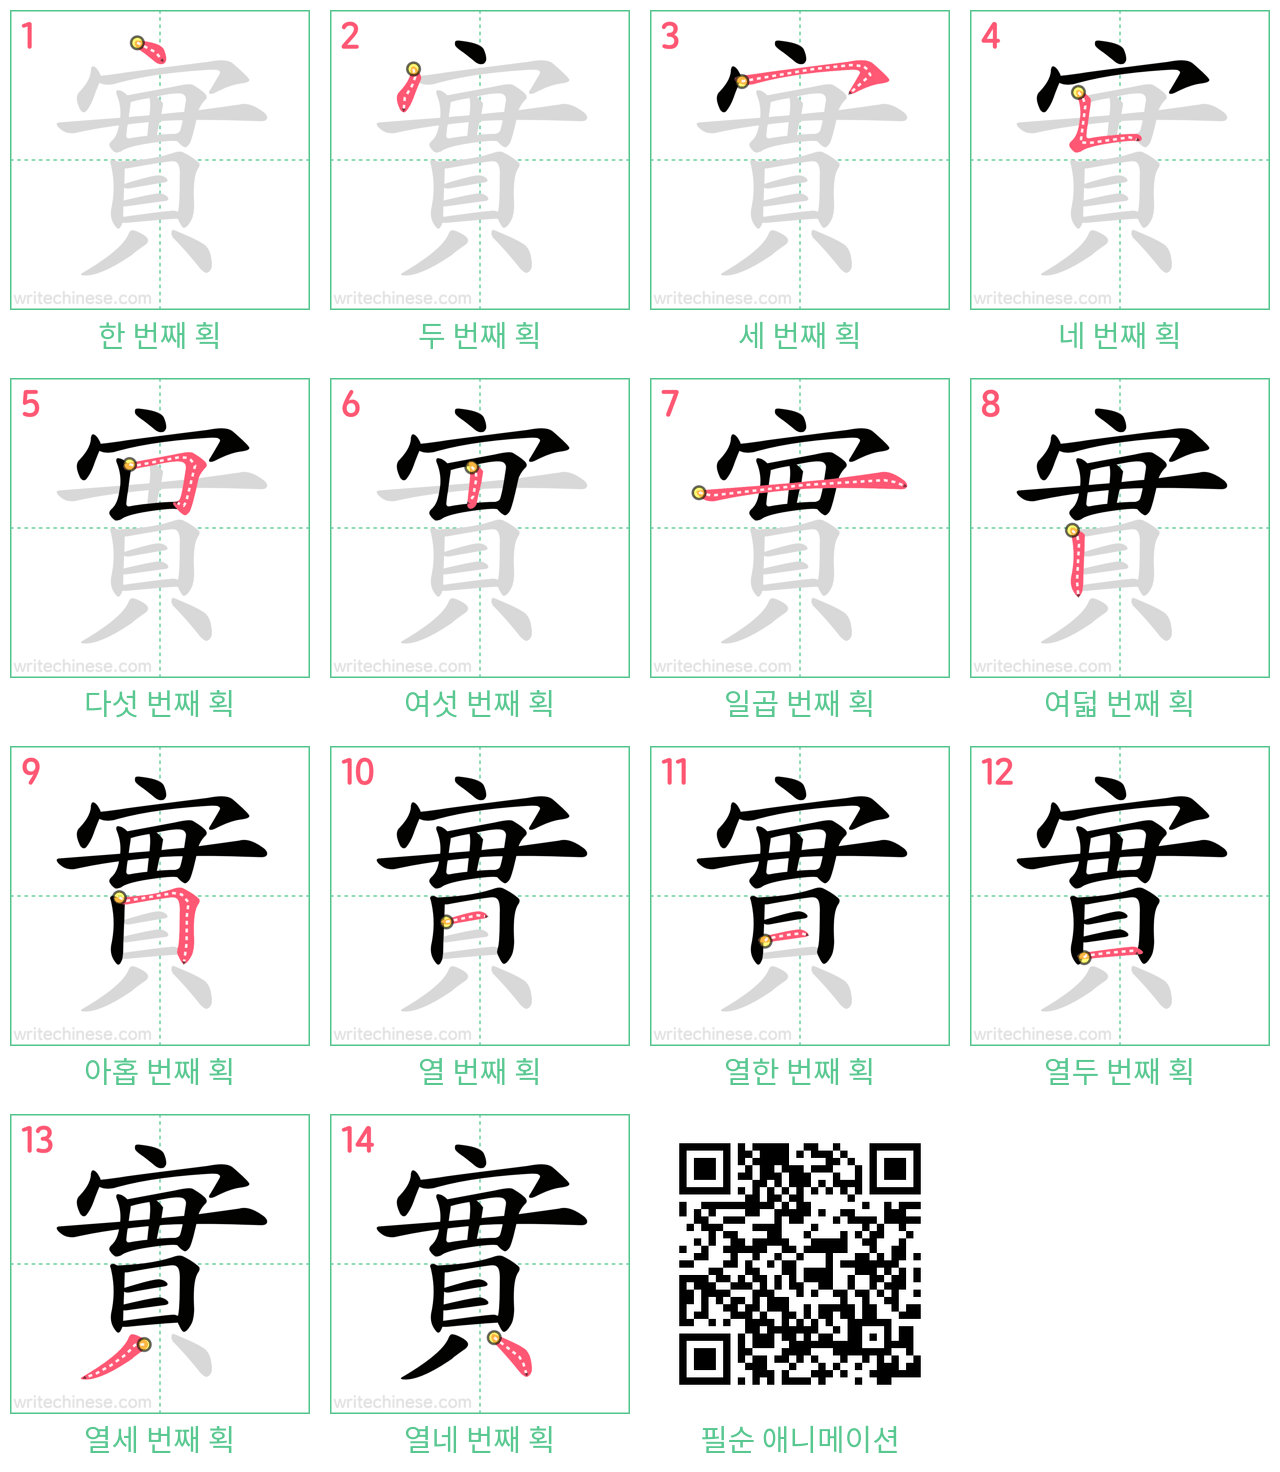 實 step-by-step stroke order diagrams